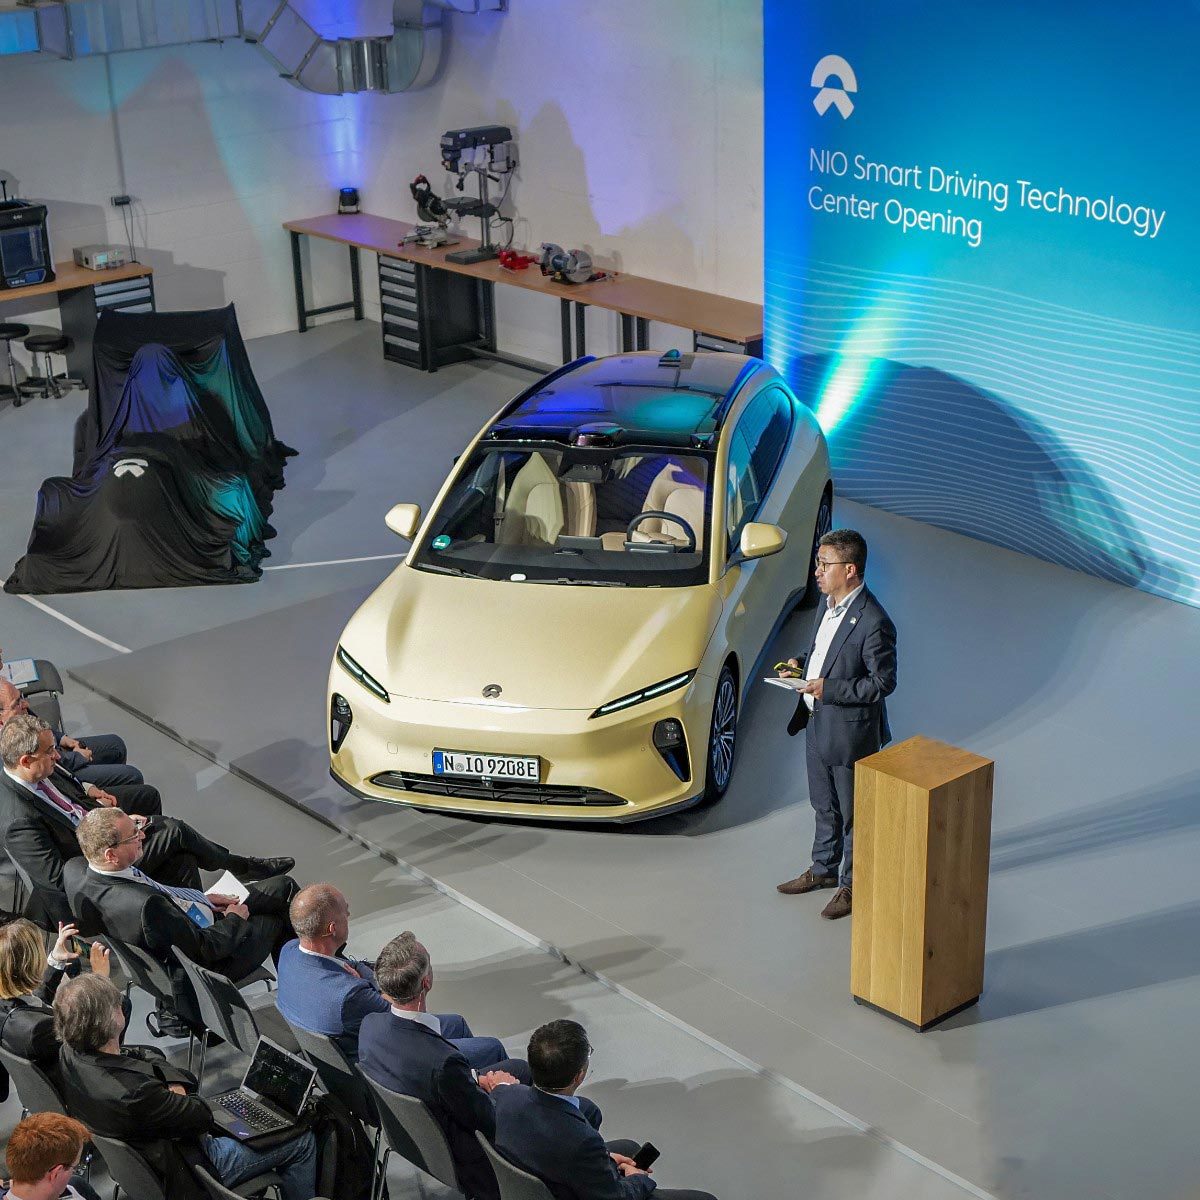 Nioは、中国以外で初めてのスマートドライブテクノロジーセンターをドイツに開設します。